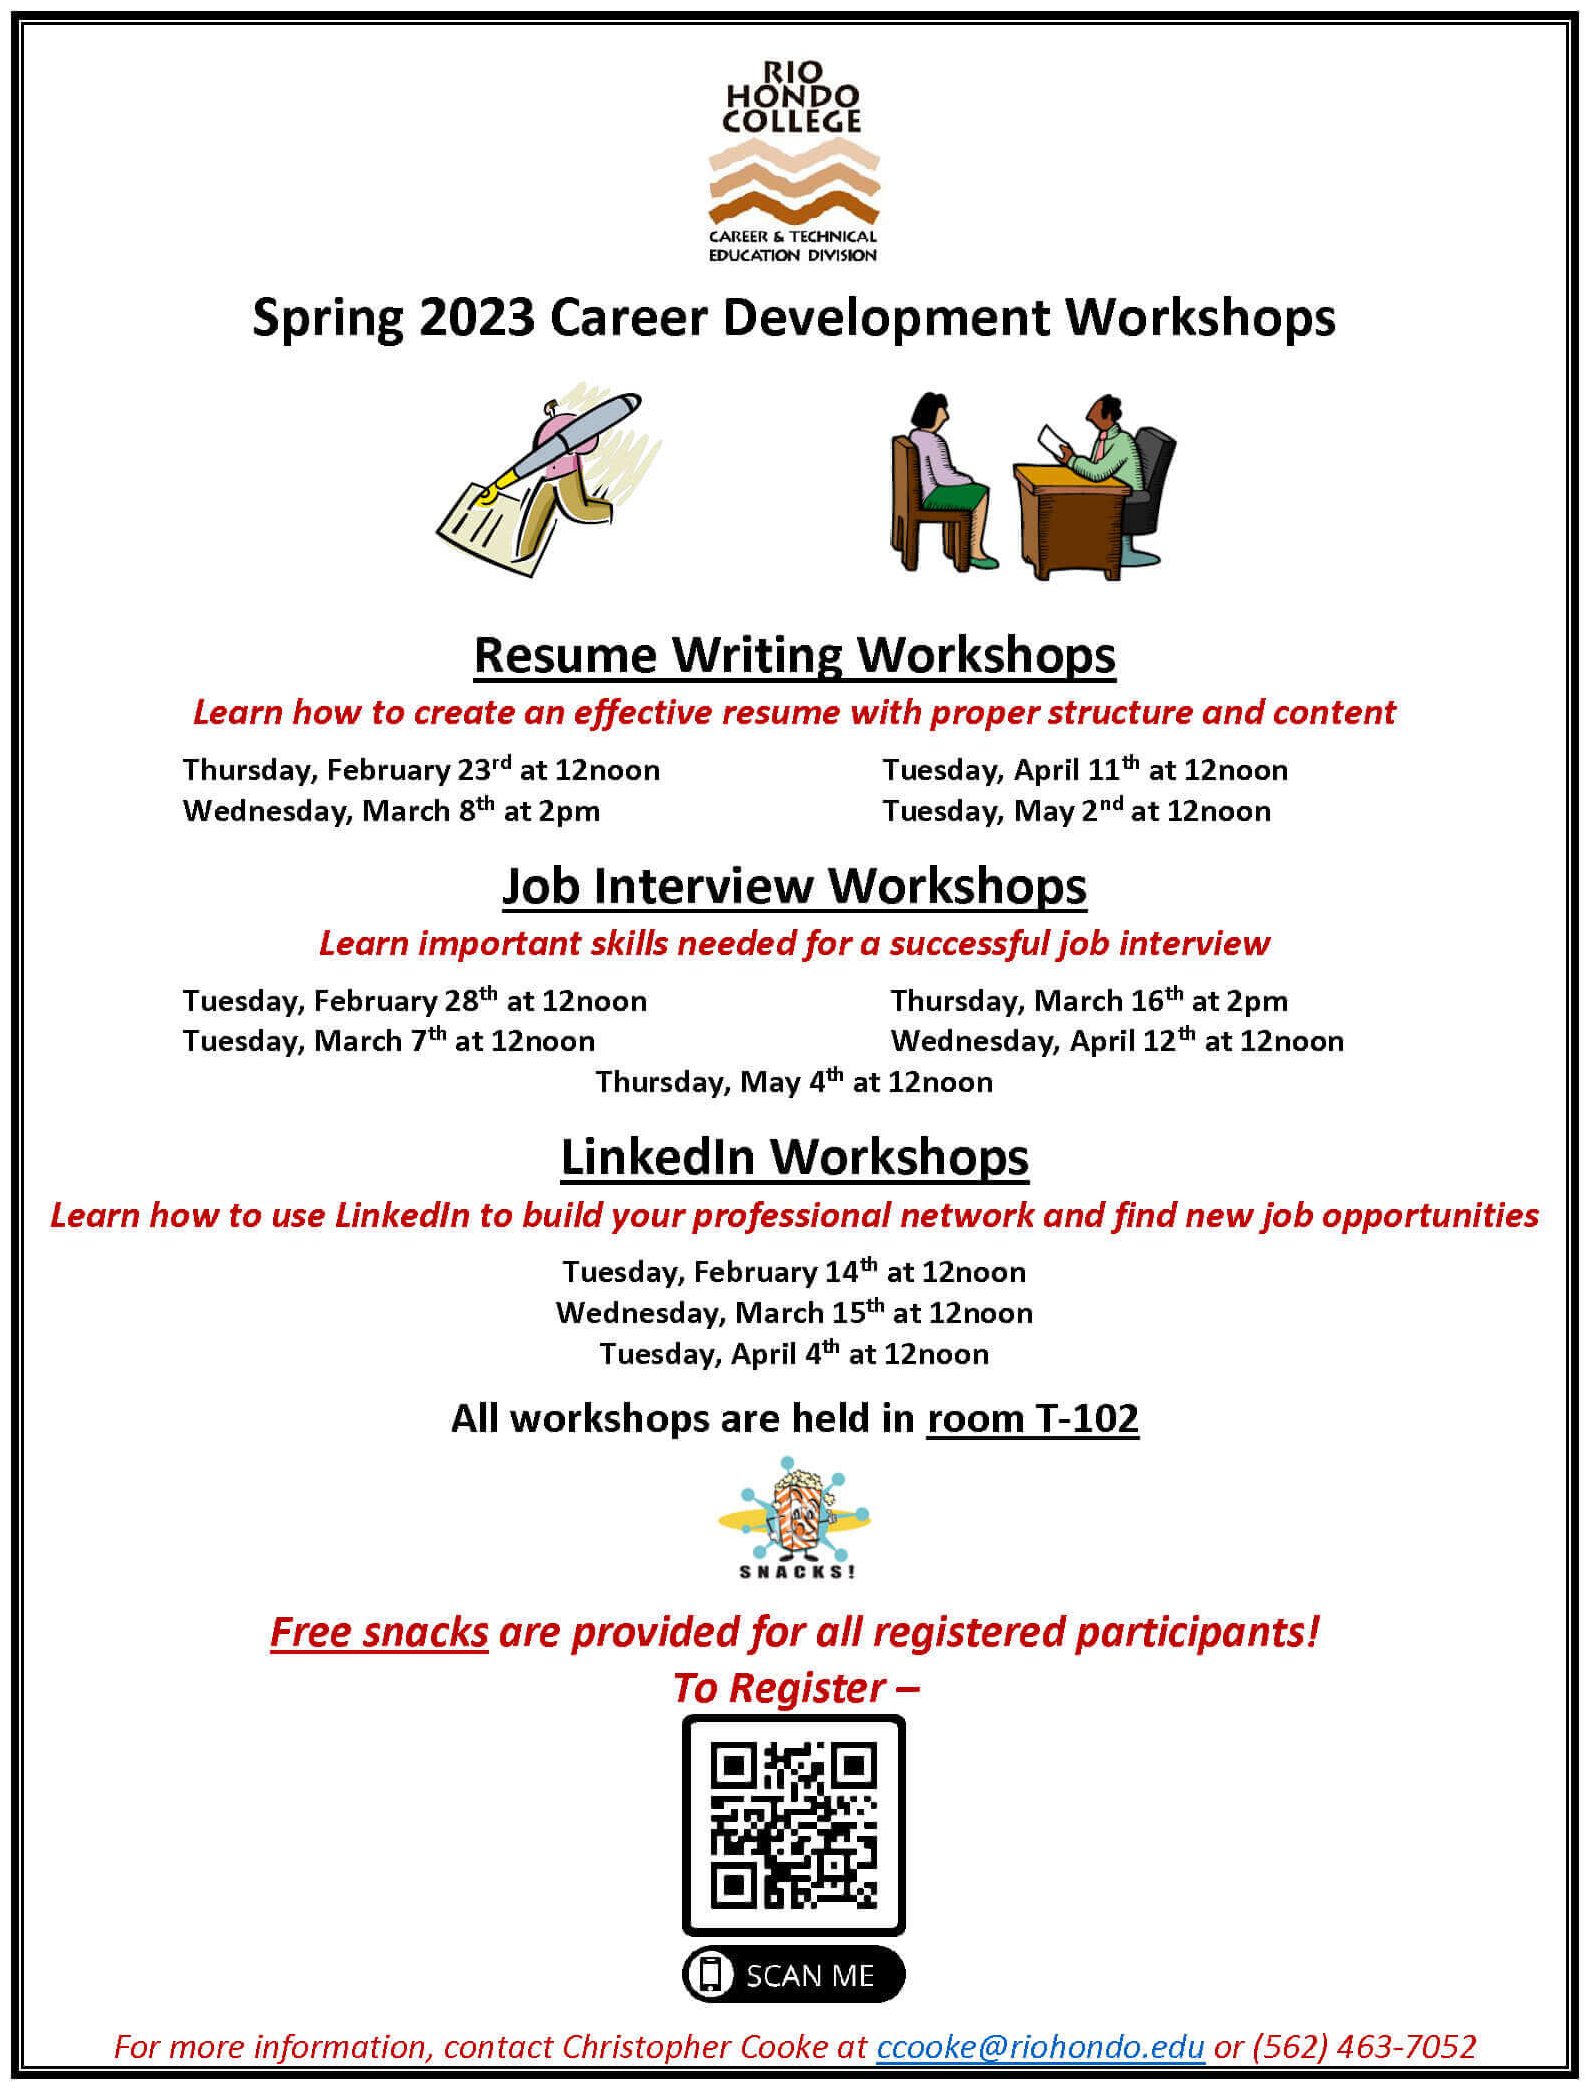 Spring 2023 Career Development Workshops flyer